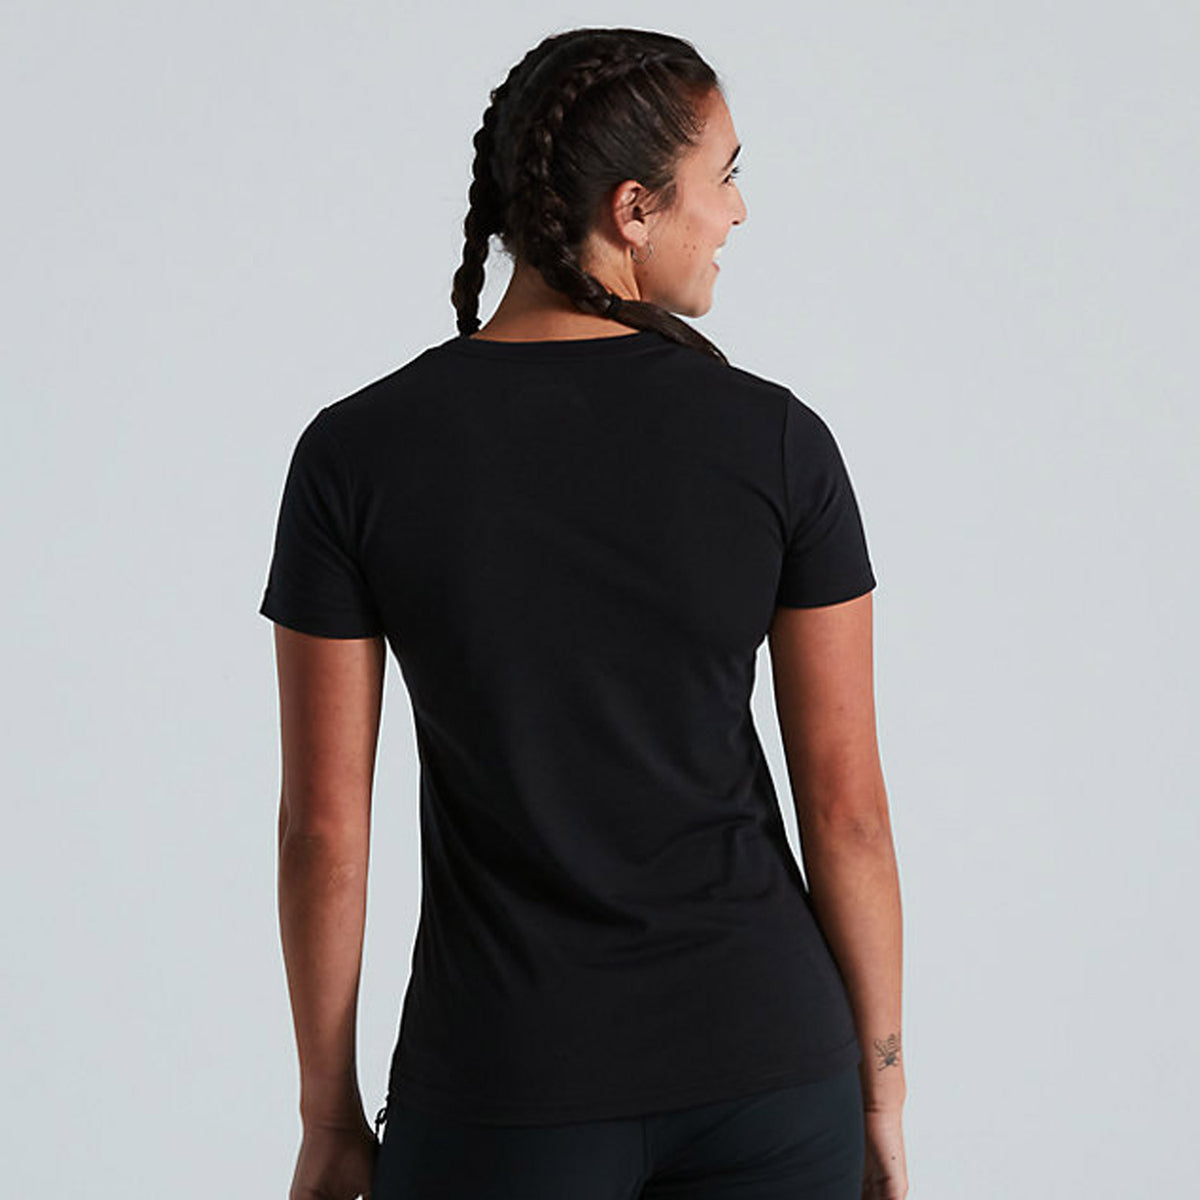 Incierto Radar contar Camiseta mujer Specialized Wordmark - Negro | All4cycling